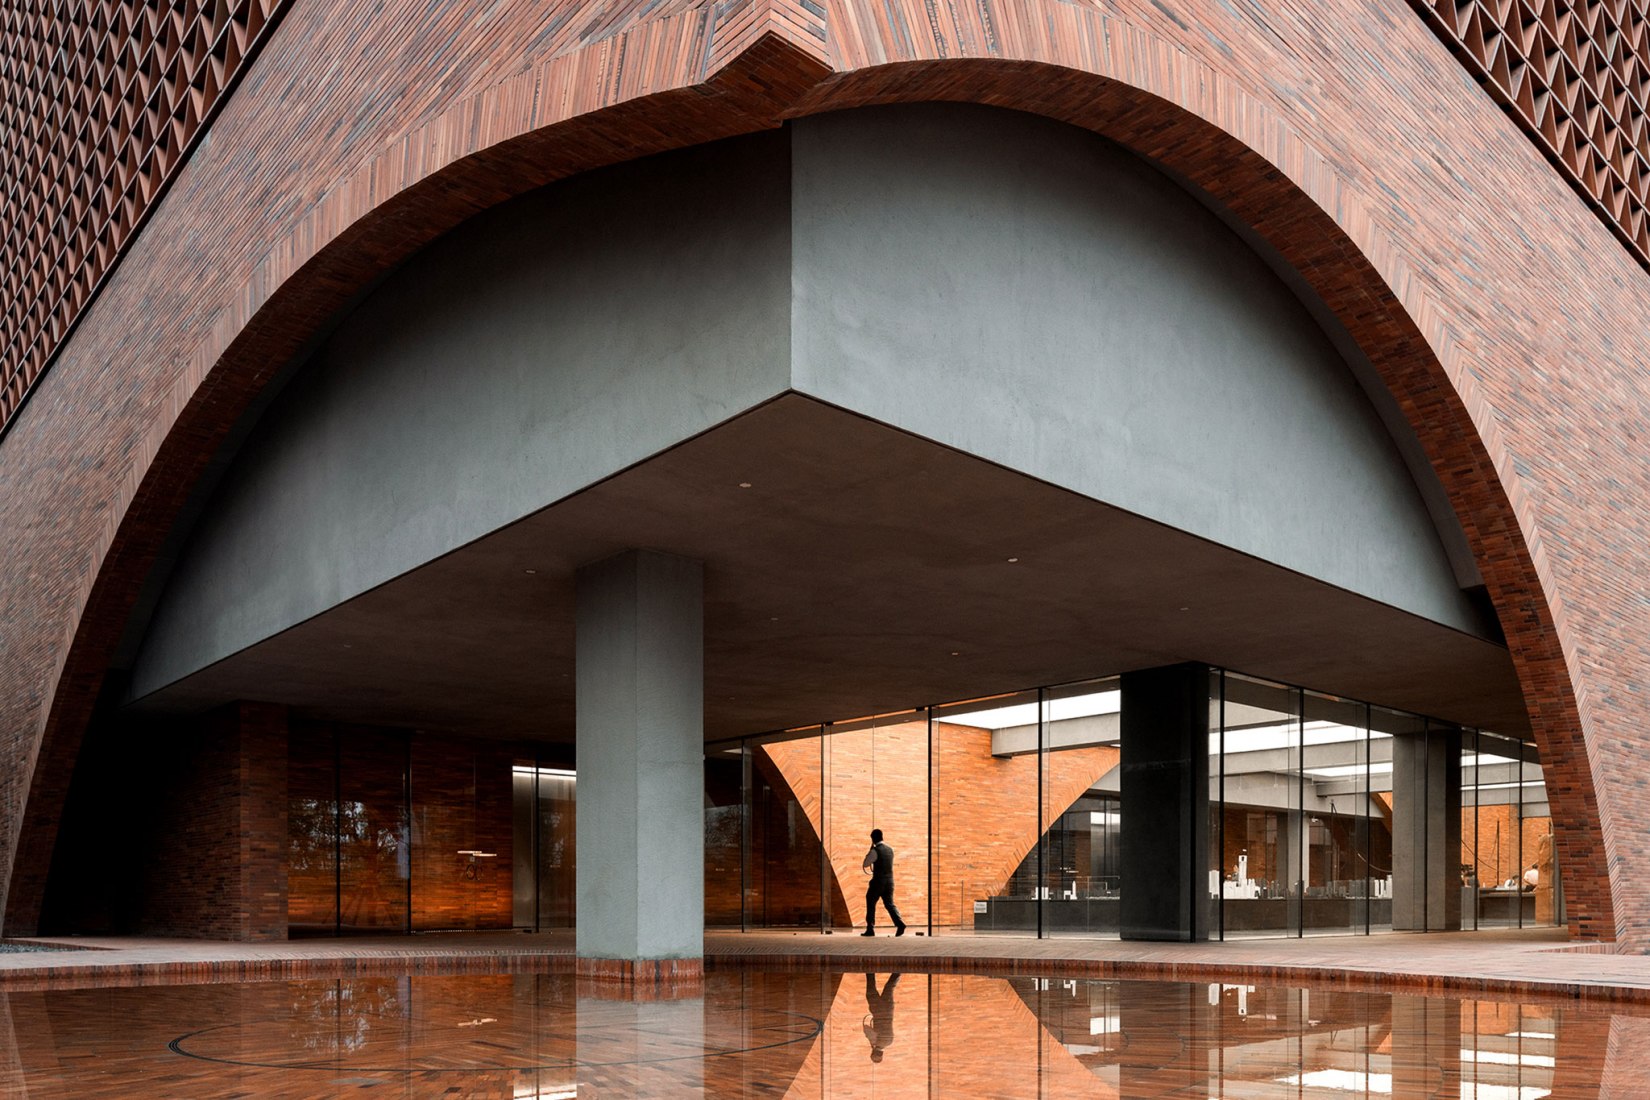 Centro de arte TIC por DOMANI Architectural Concepts. Fotografía por Vincent Wu